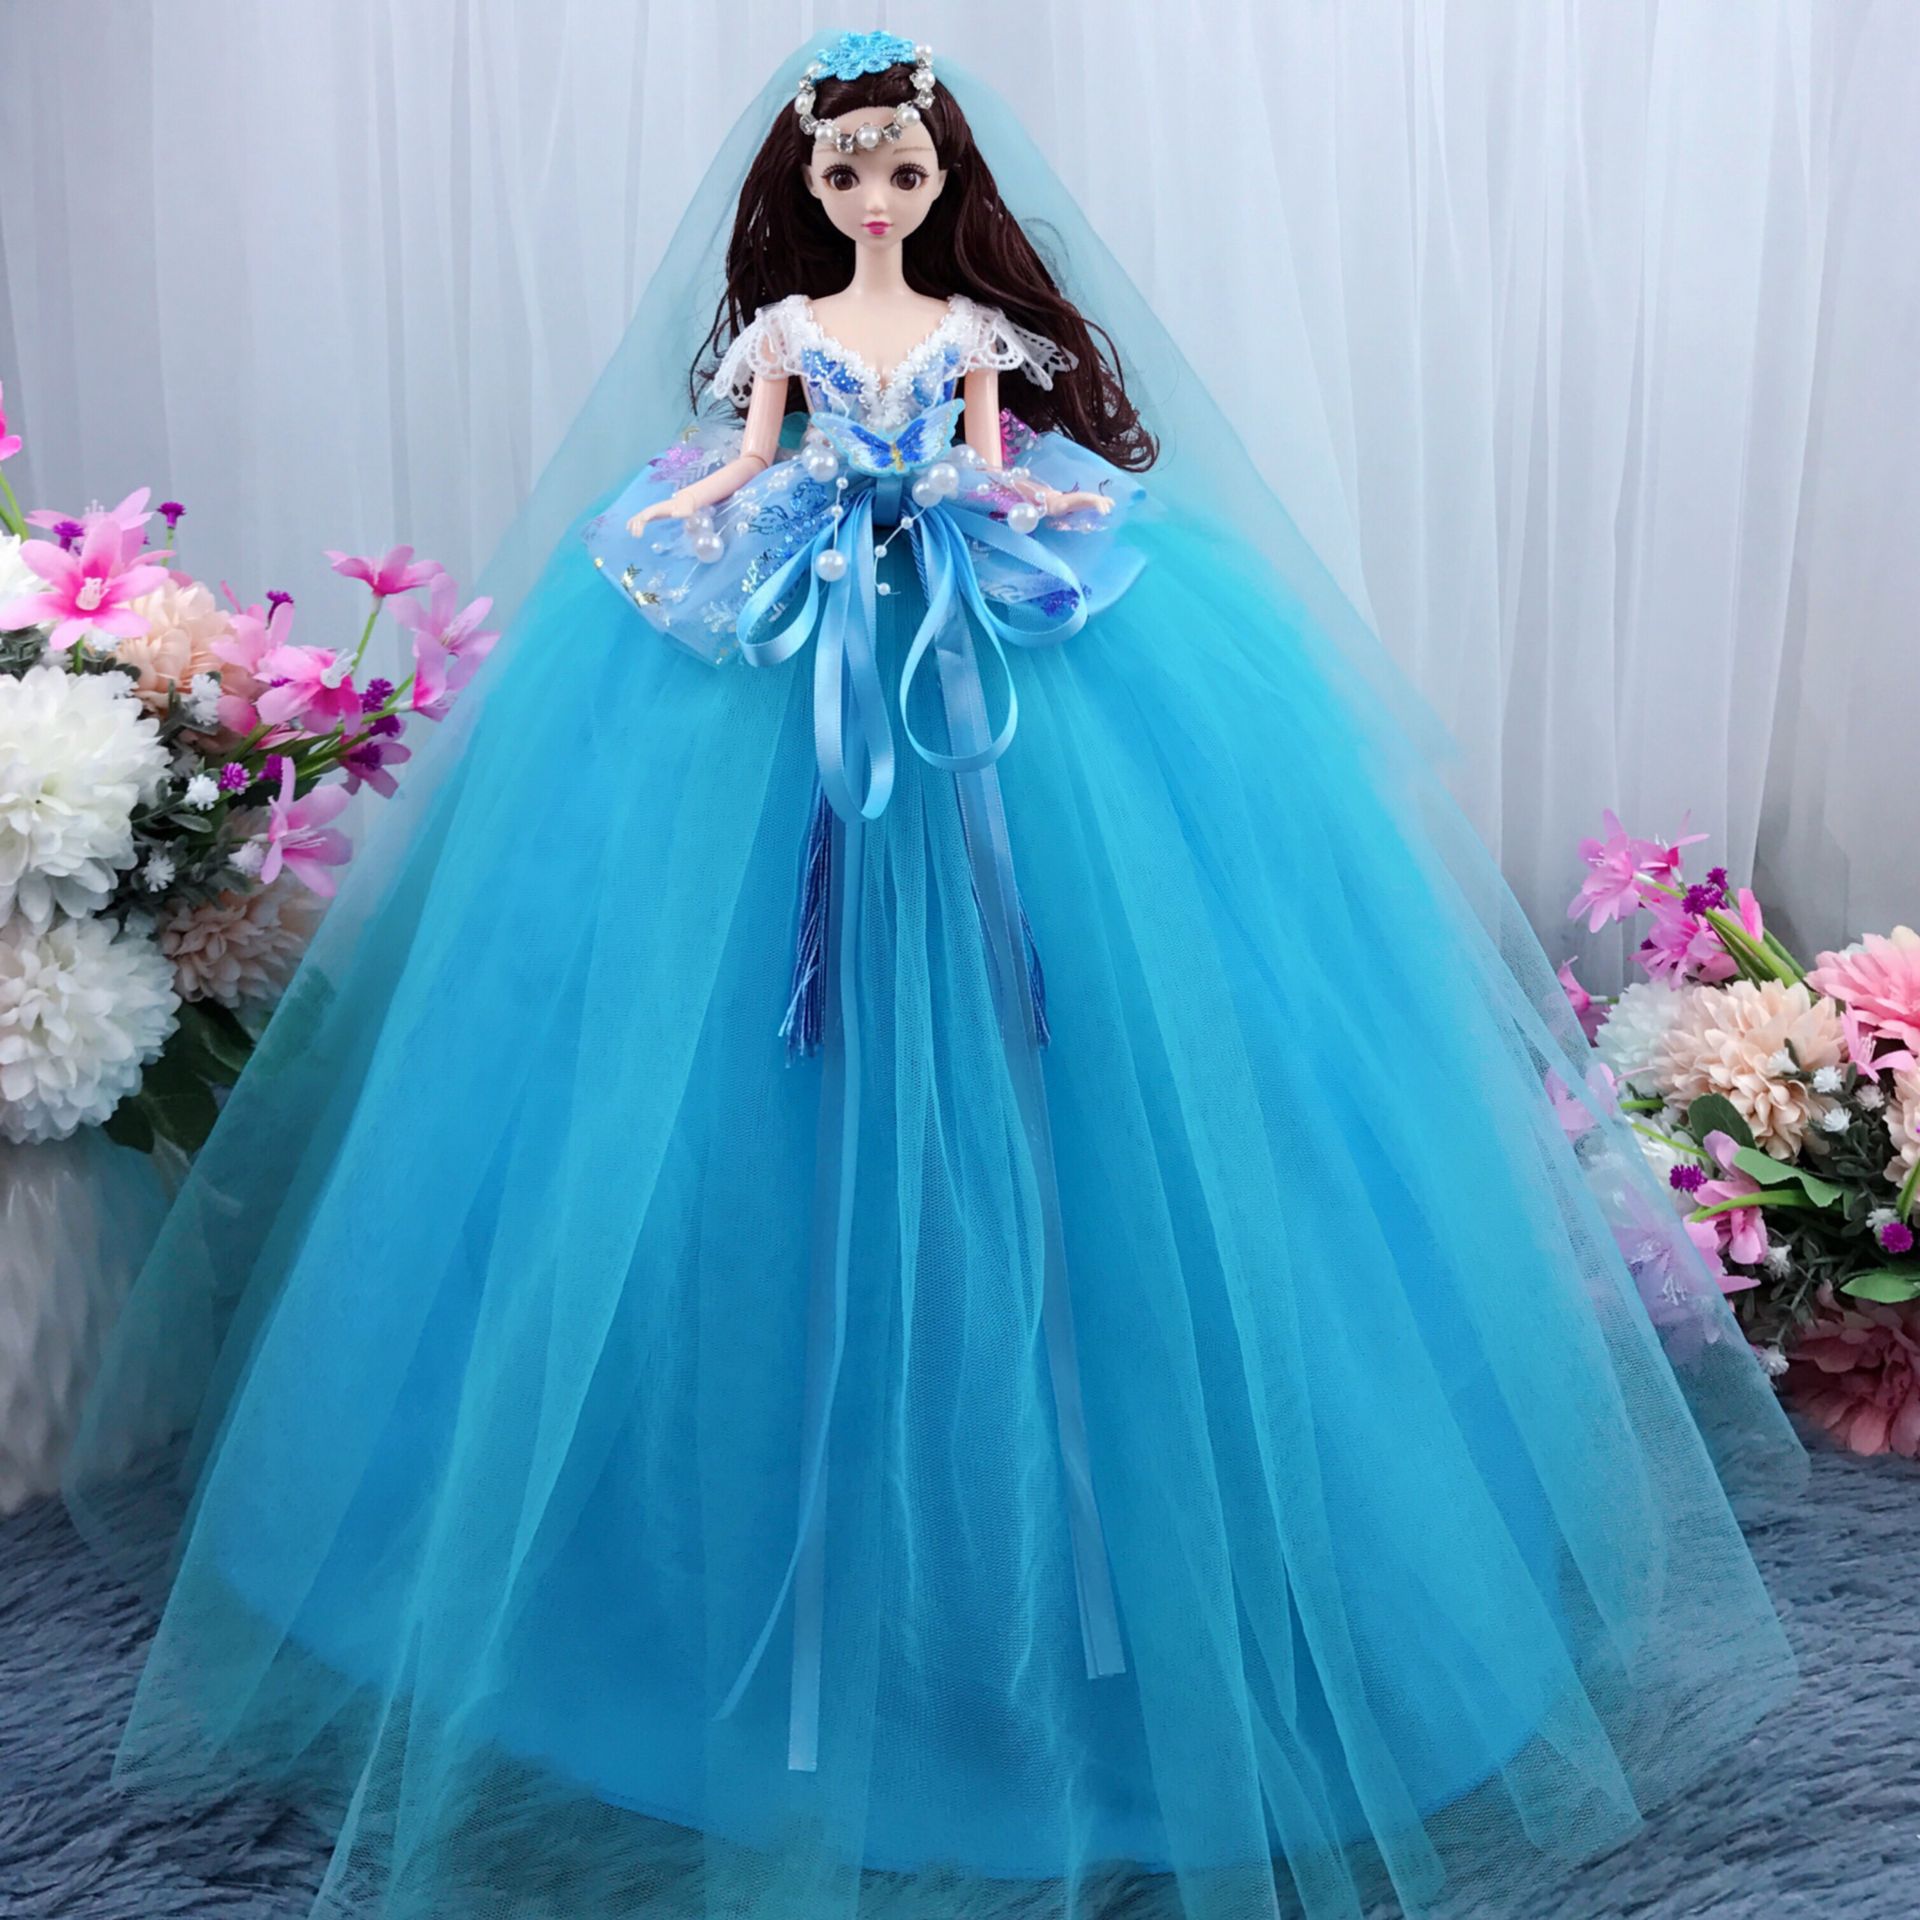 厂家批发婚纱公主仿真洋娃娃玩具单个公仔舞蹈学校招生礼物